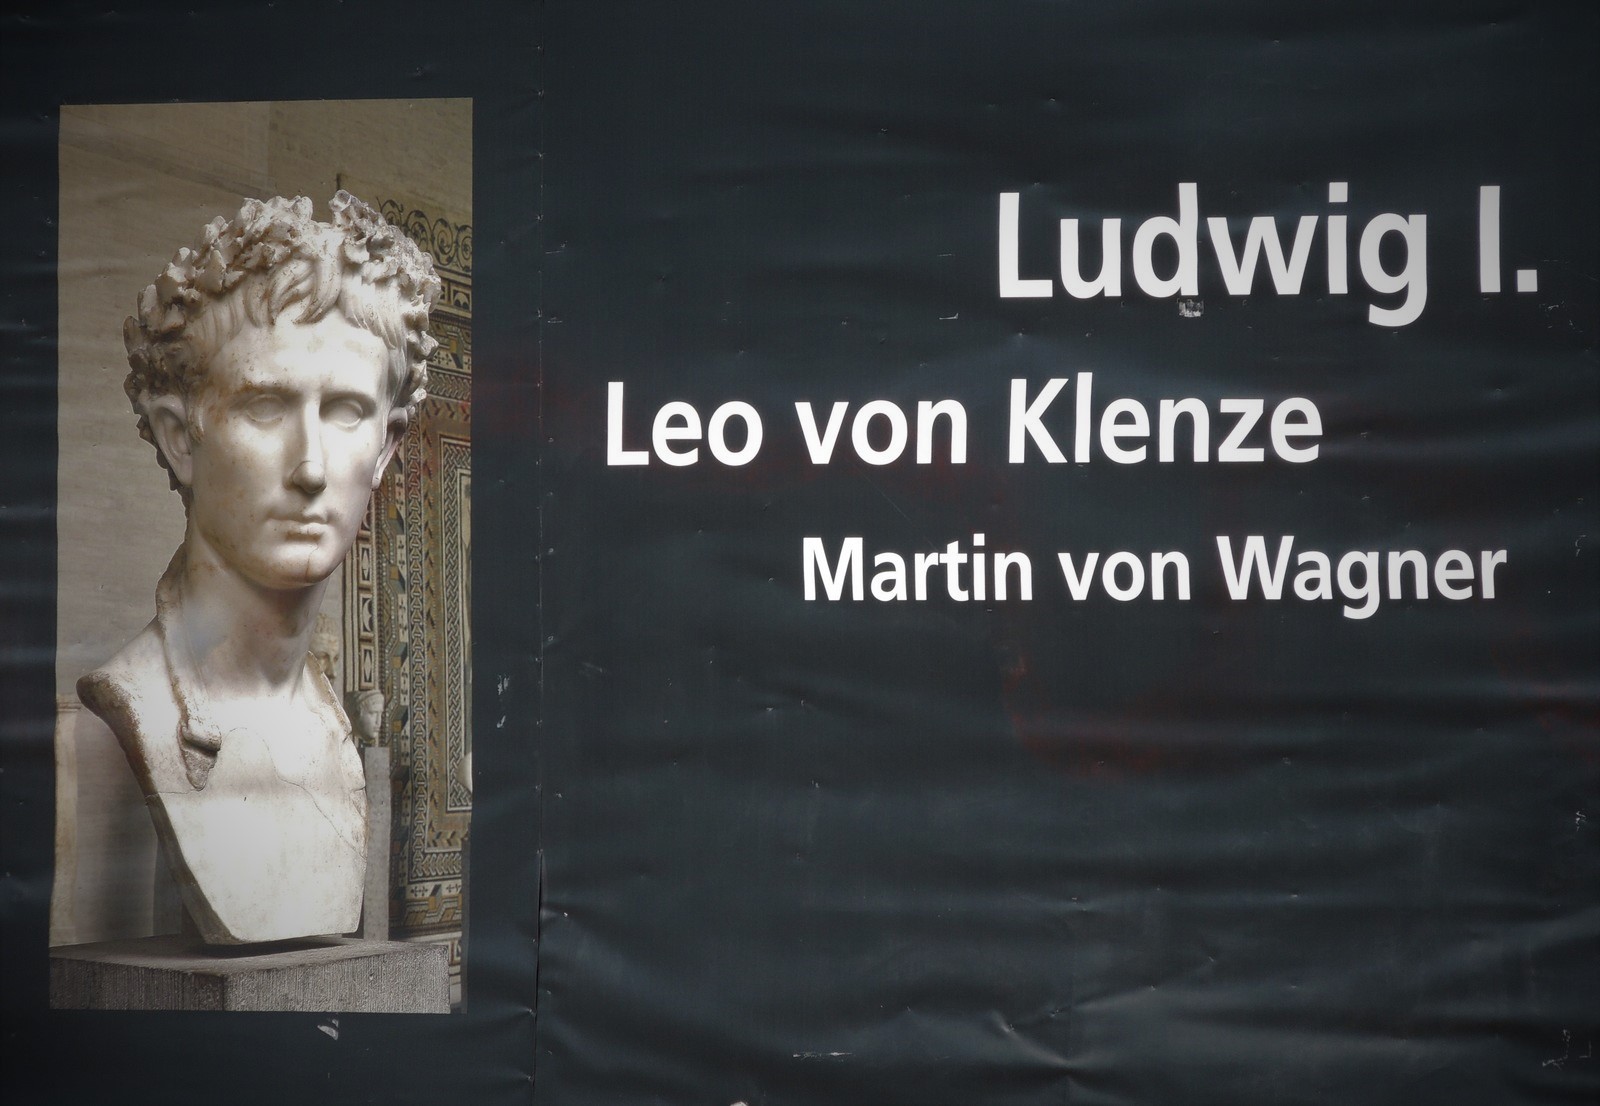 Ludwig I., Leo von Klenze, Martin von Wagner